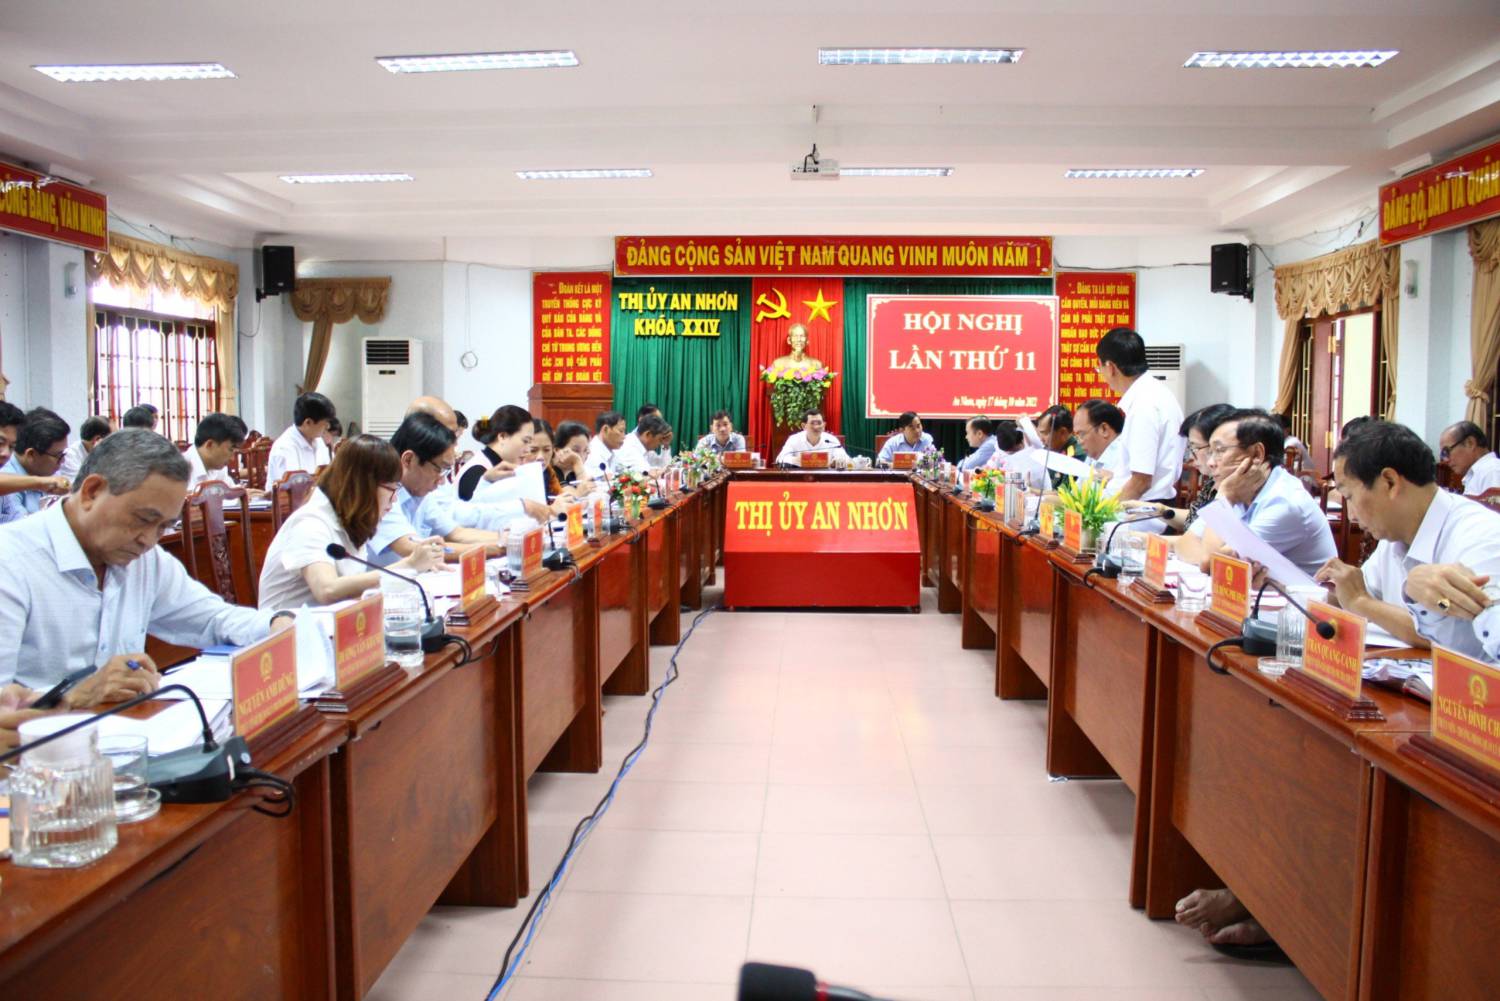 Hội nghị lần thứ 11 Ban Chấp hành Đảng bộ thị xã an Nhơn Khóa XXIV, nhiệm kỳ 2020 - 2025